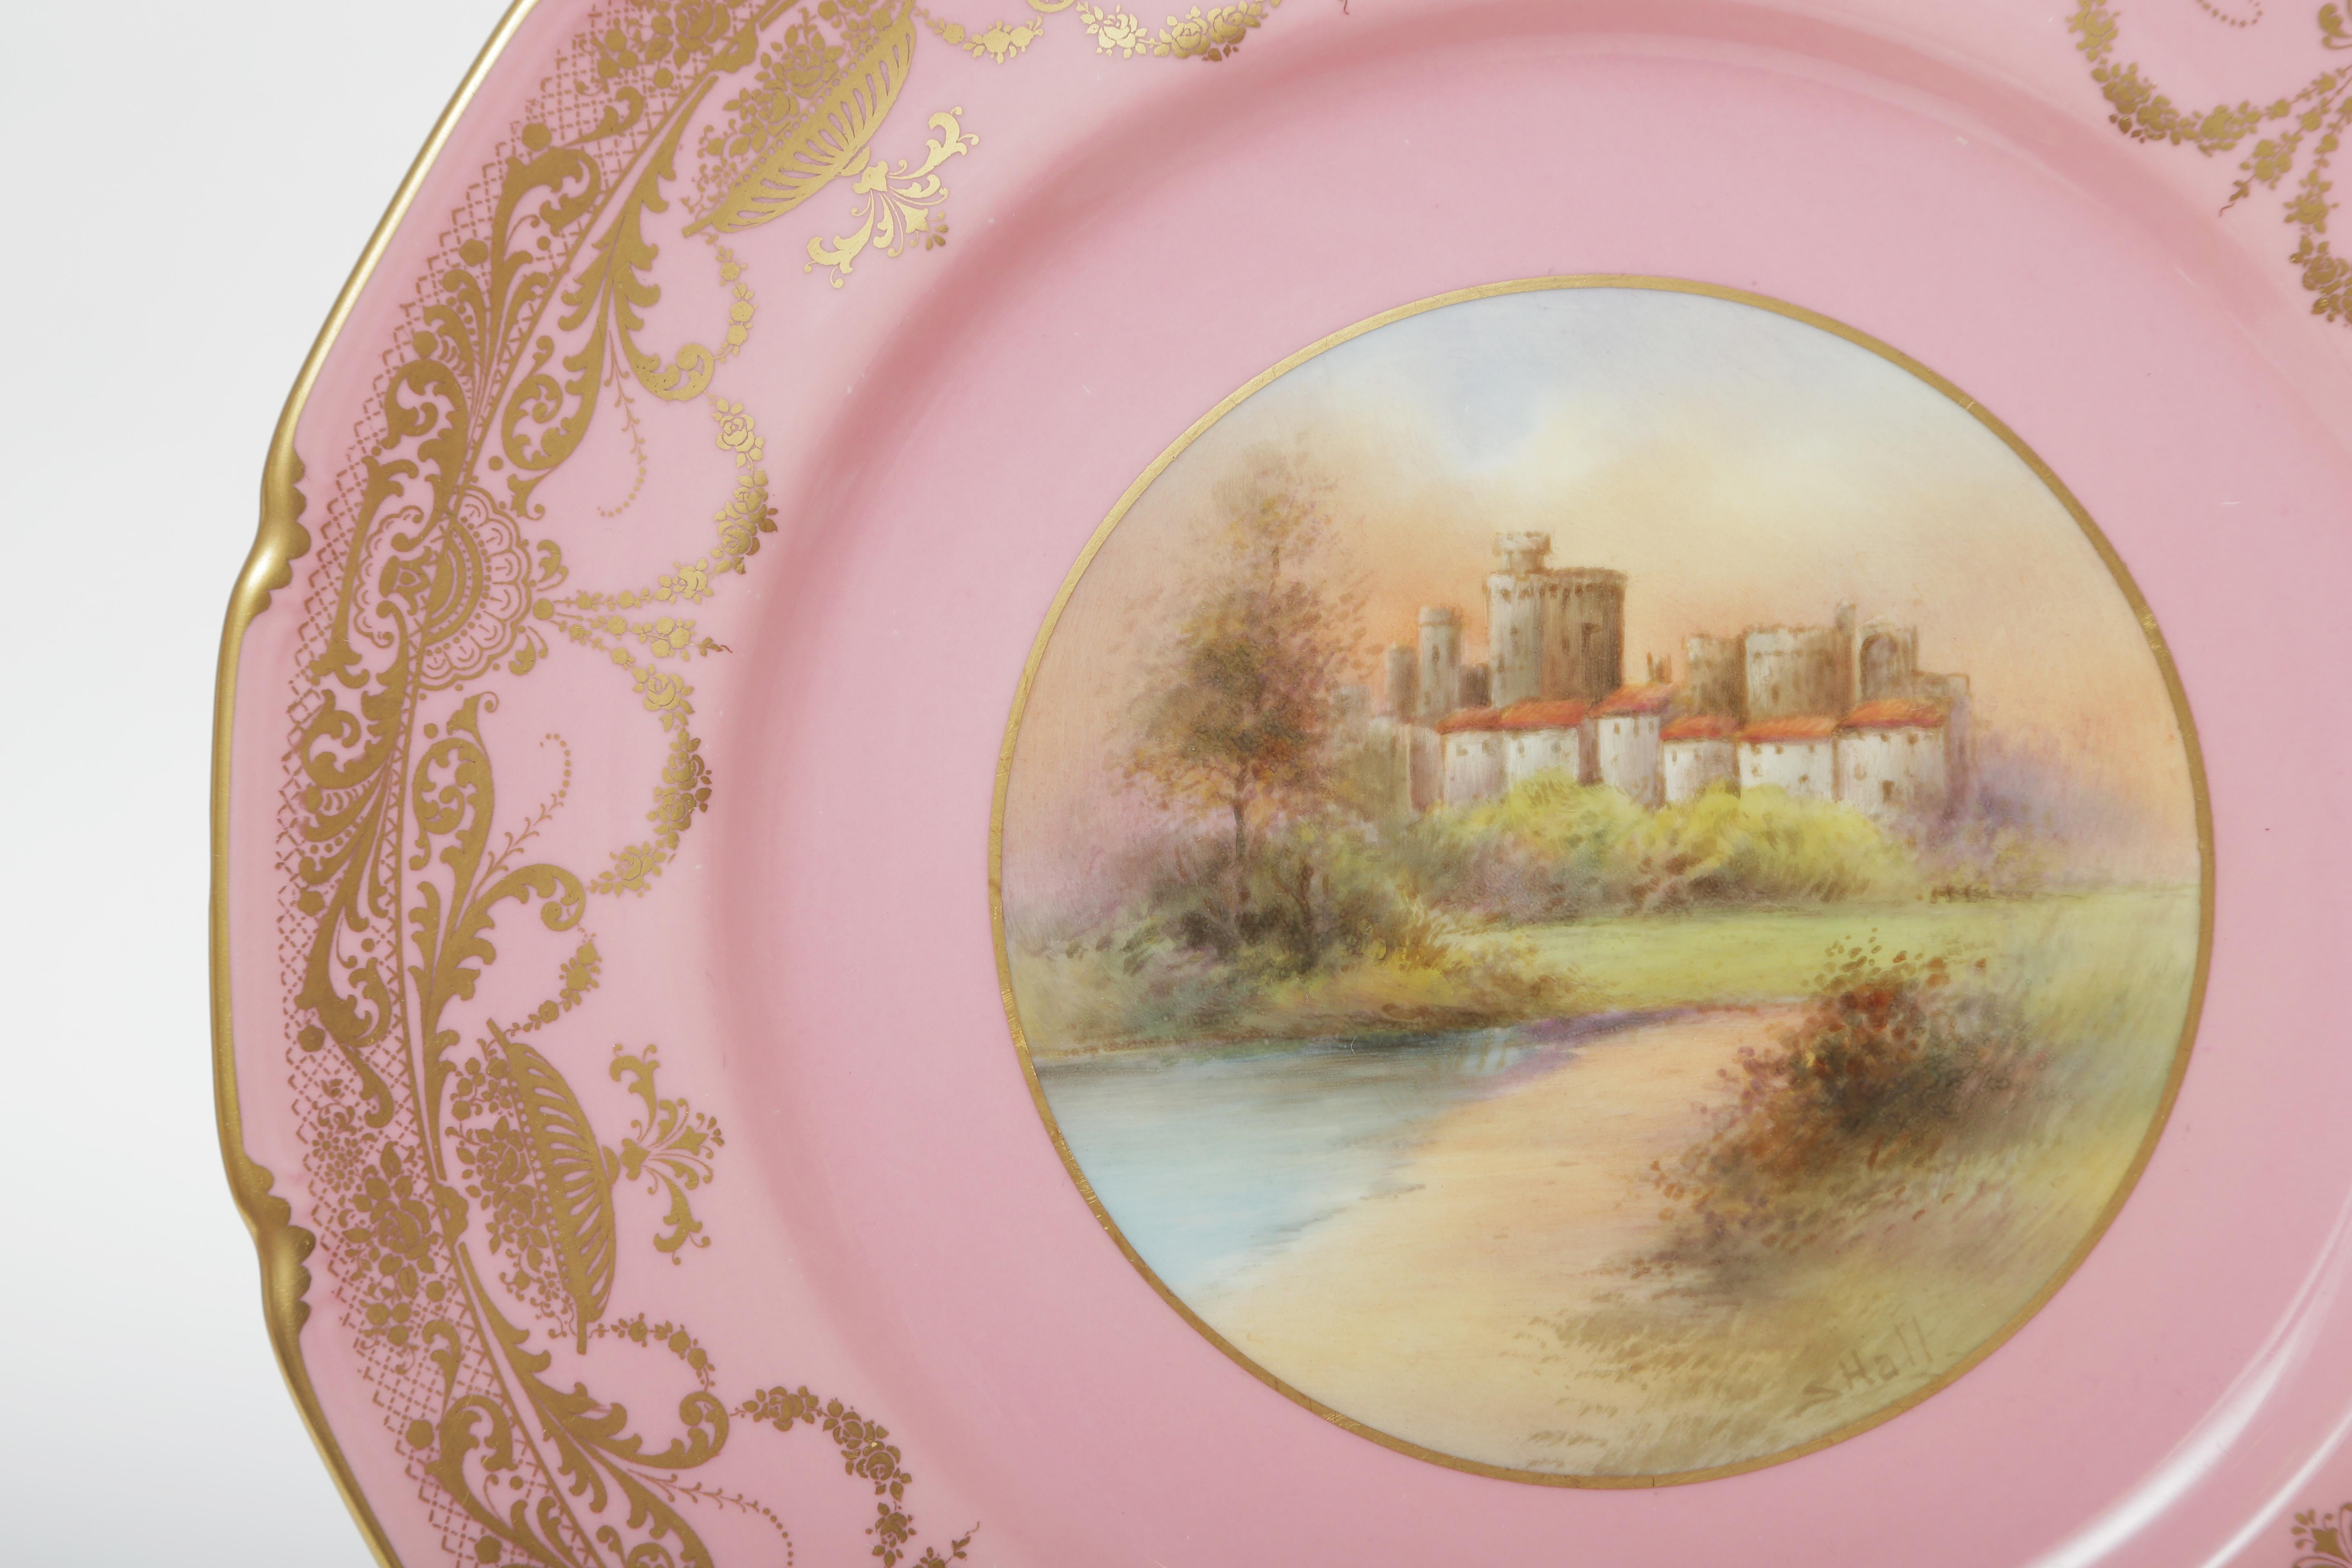 Une vibrante et merveilleuse collection d'assiettes anciennes en porcelaine représentant 12 châteaux britanniques distincts, dont les poinçons au dos des assiettes permettent de les dater d'environ 1912. Peint à la main et signé sur chaque plaque